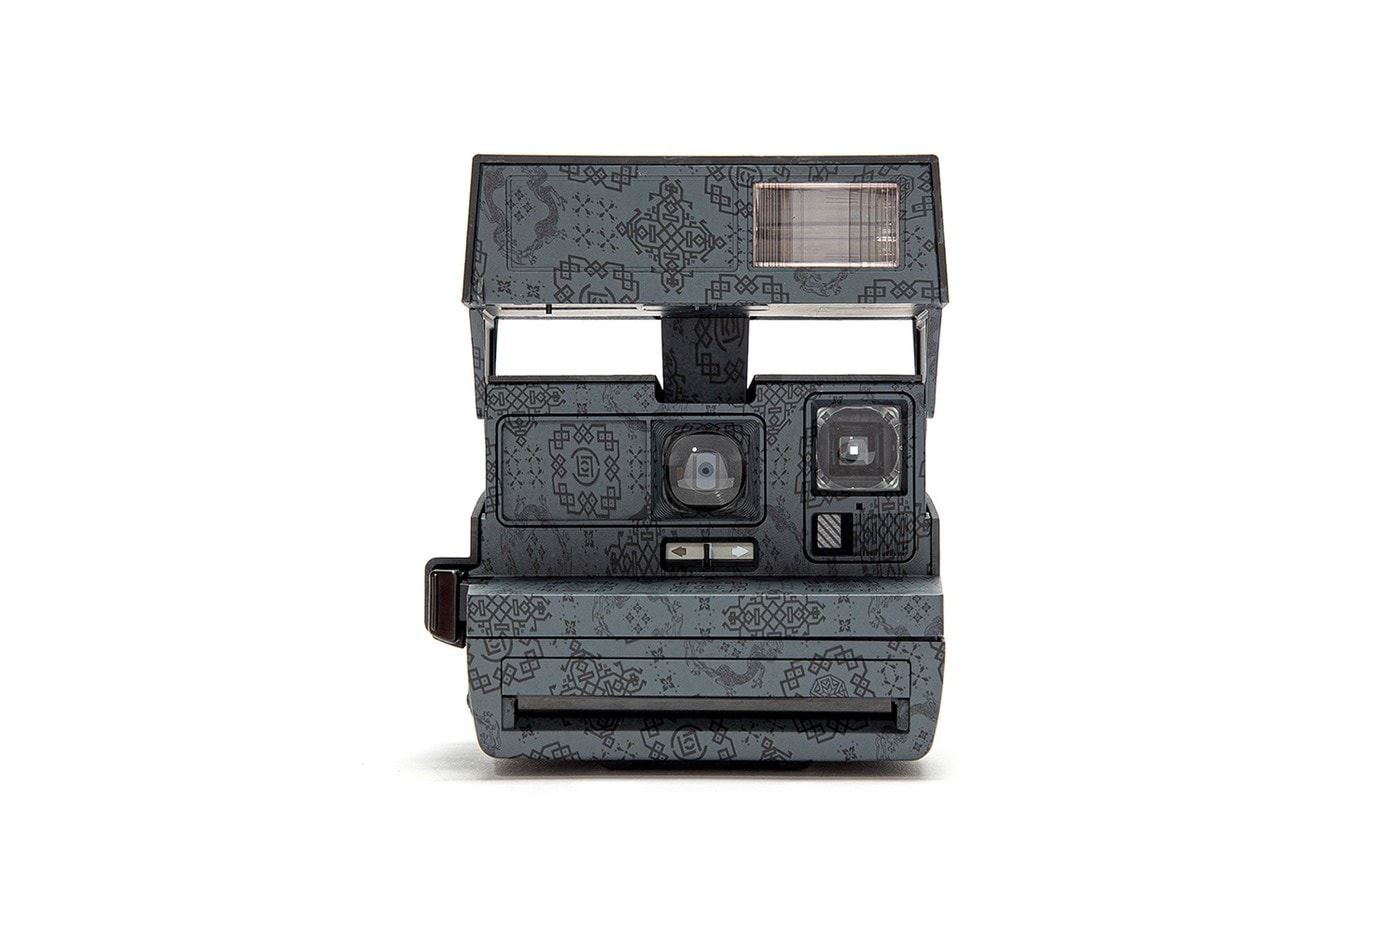 CLOT x Polaroid 600 全新聯乘「絲綢」拍立得相機發佈